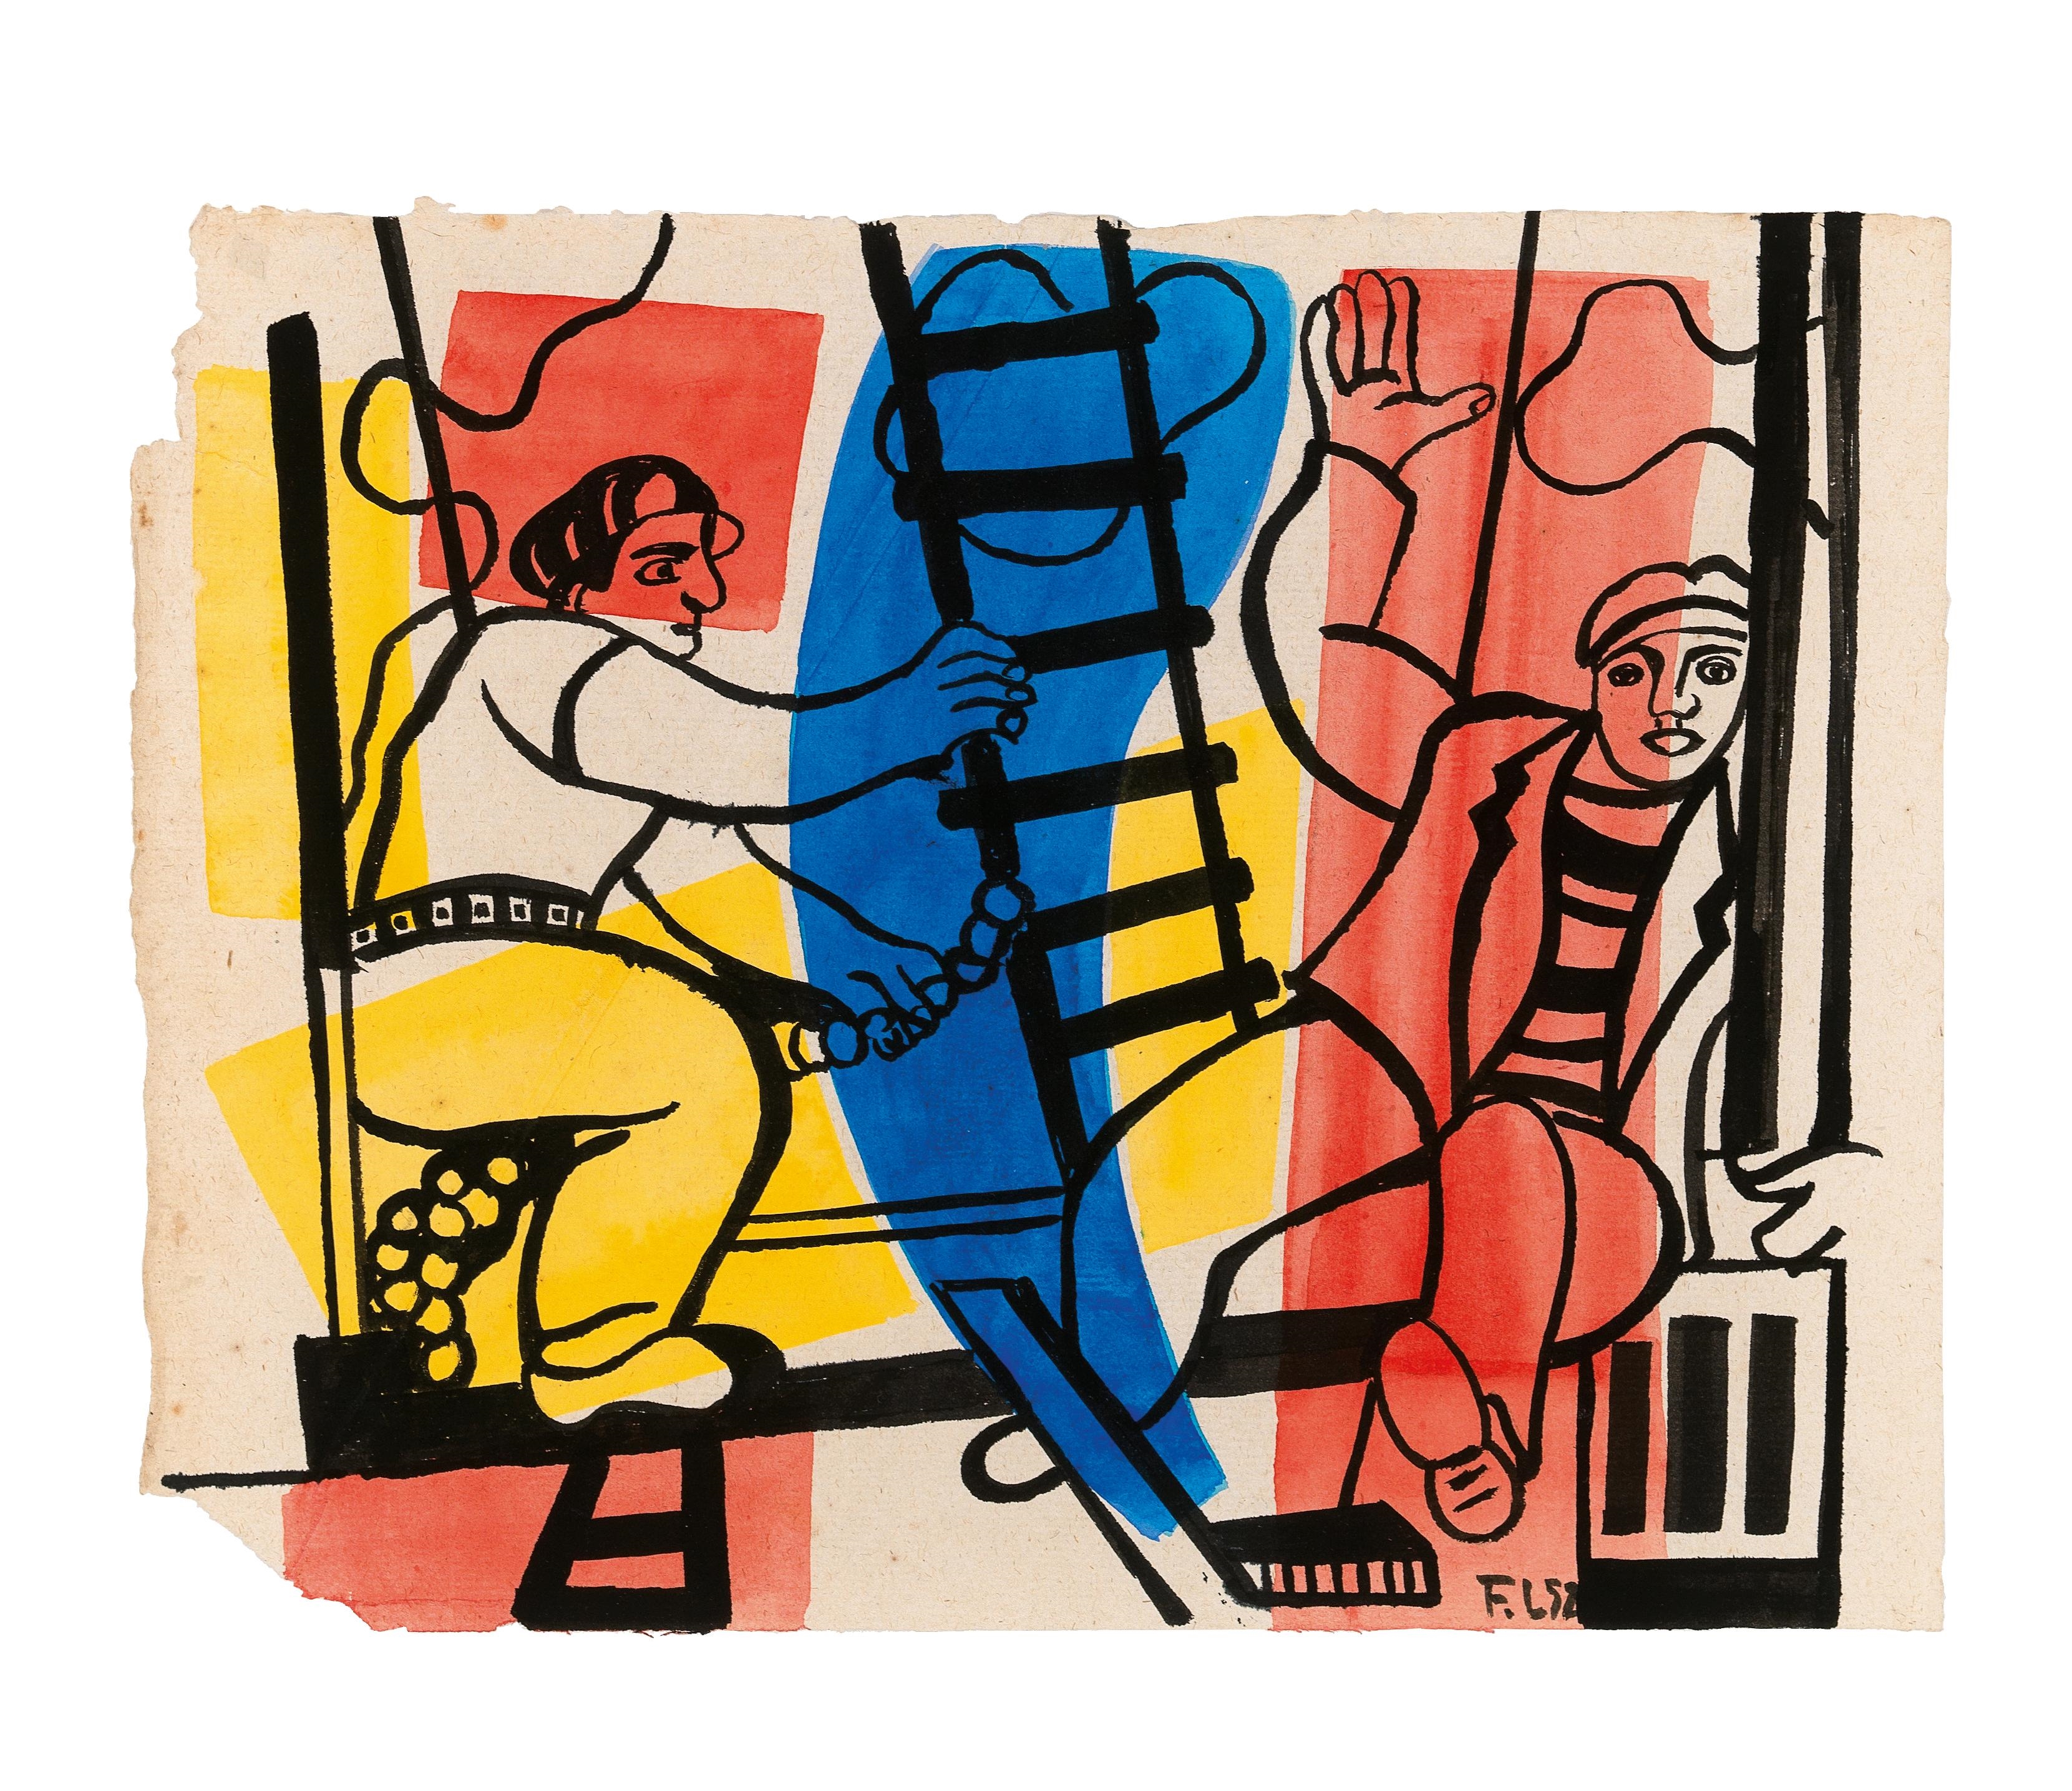 Étude pour “Les Constructeurs” by Fernand Léger, 1952